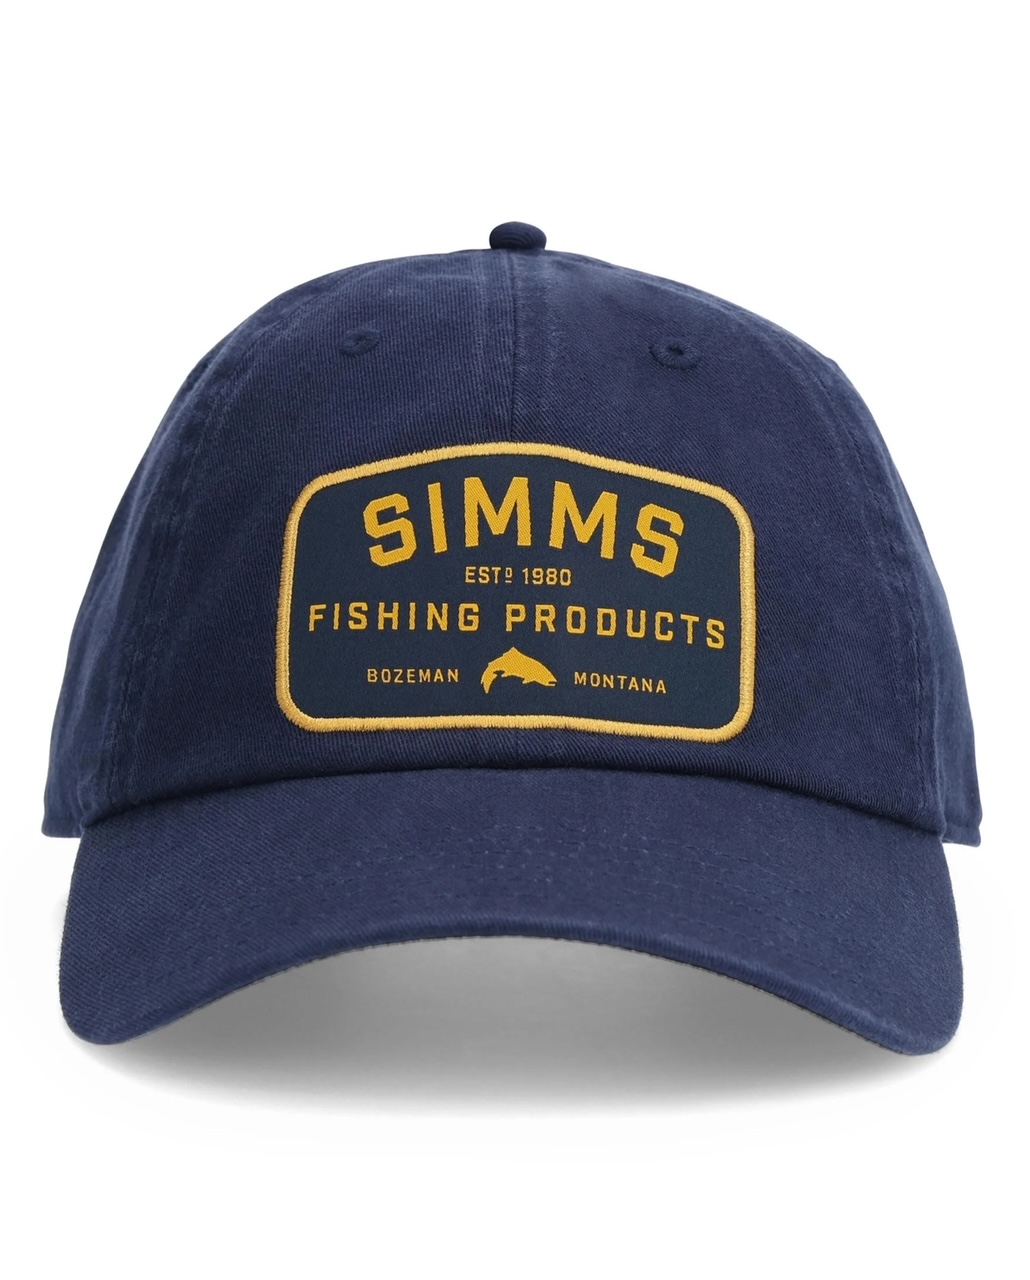 Simms Fishing Single Haul Cap